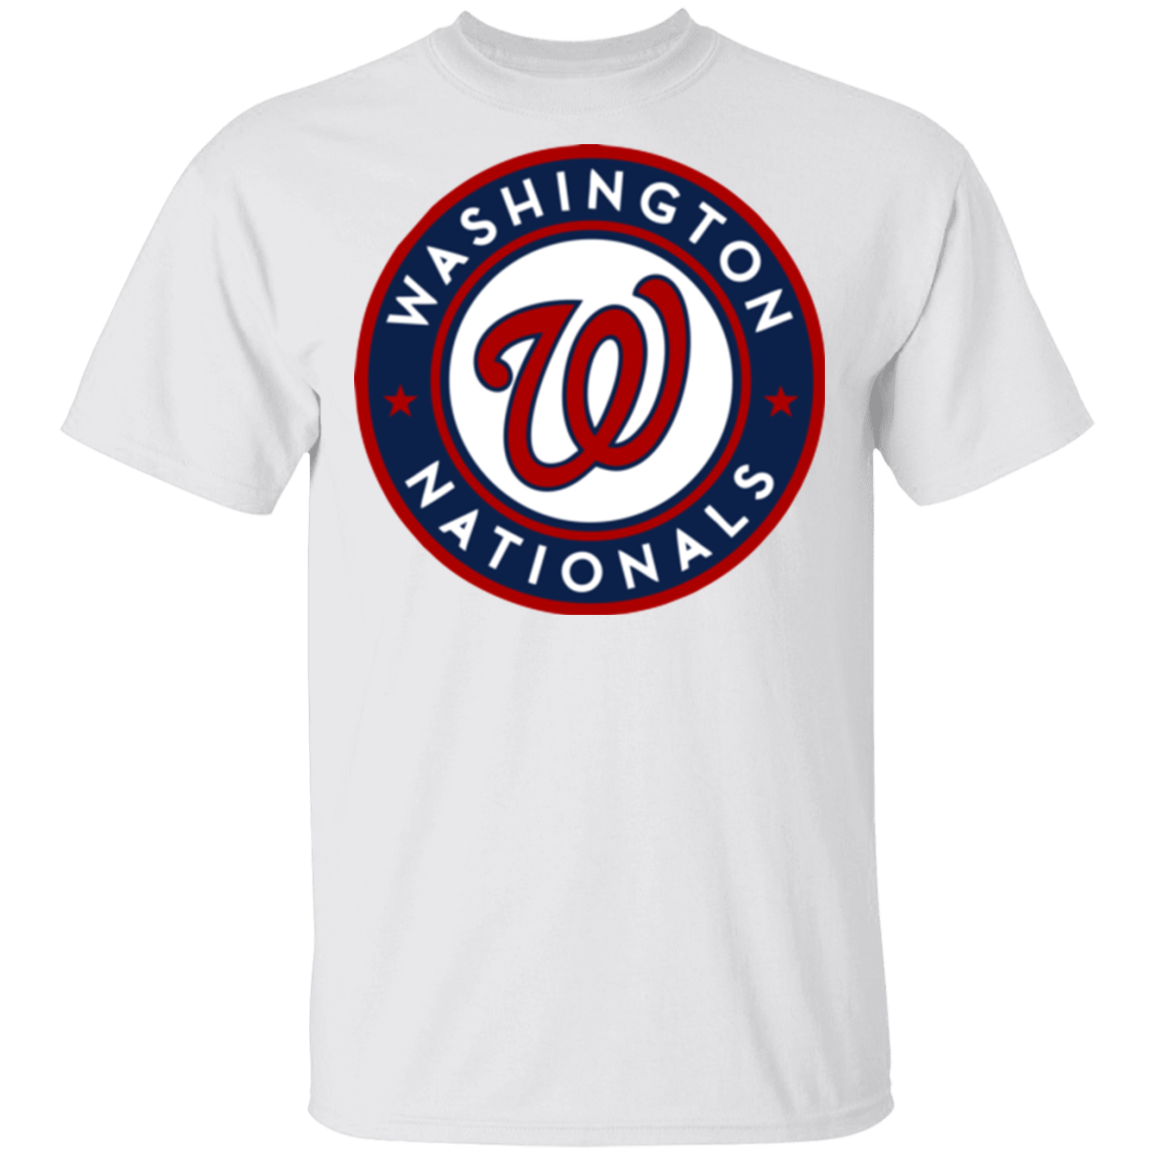 Official Washington Nationals T-Shirts, Nationals Shirt, Nationals